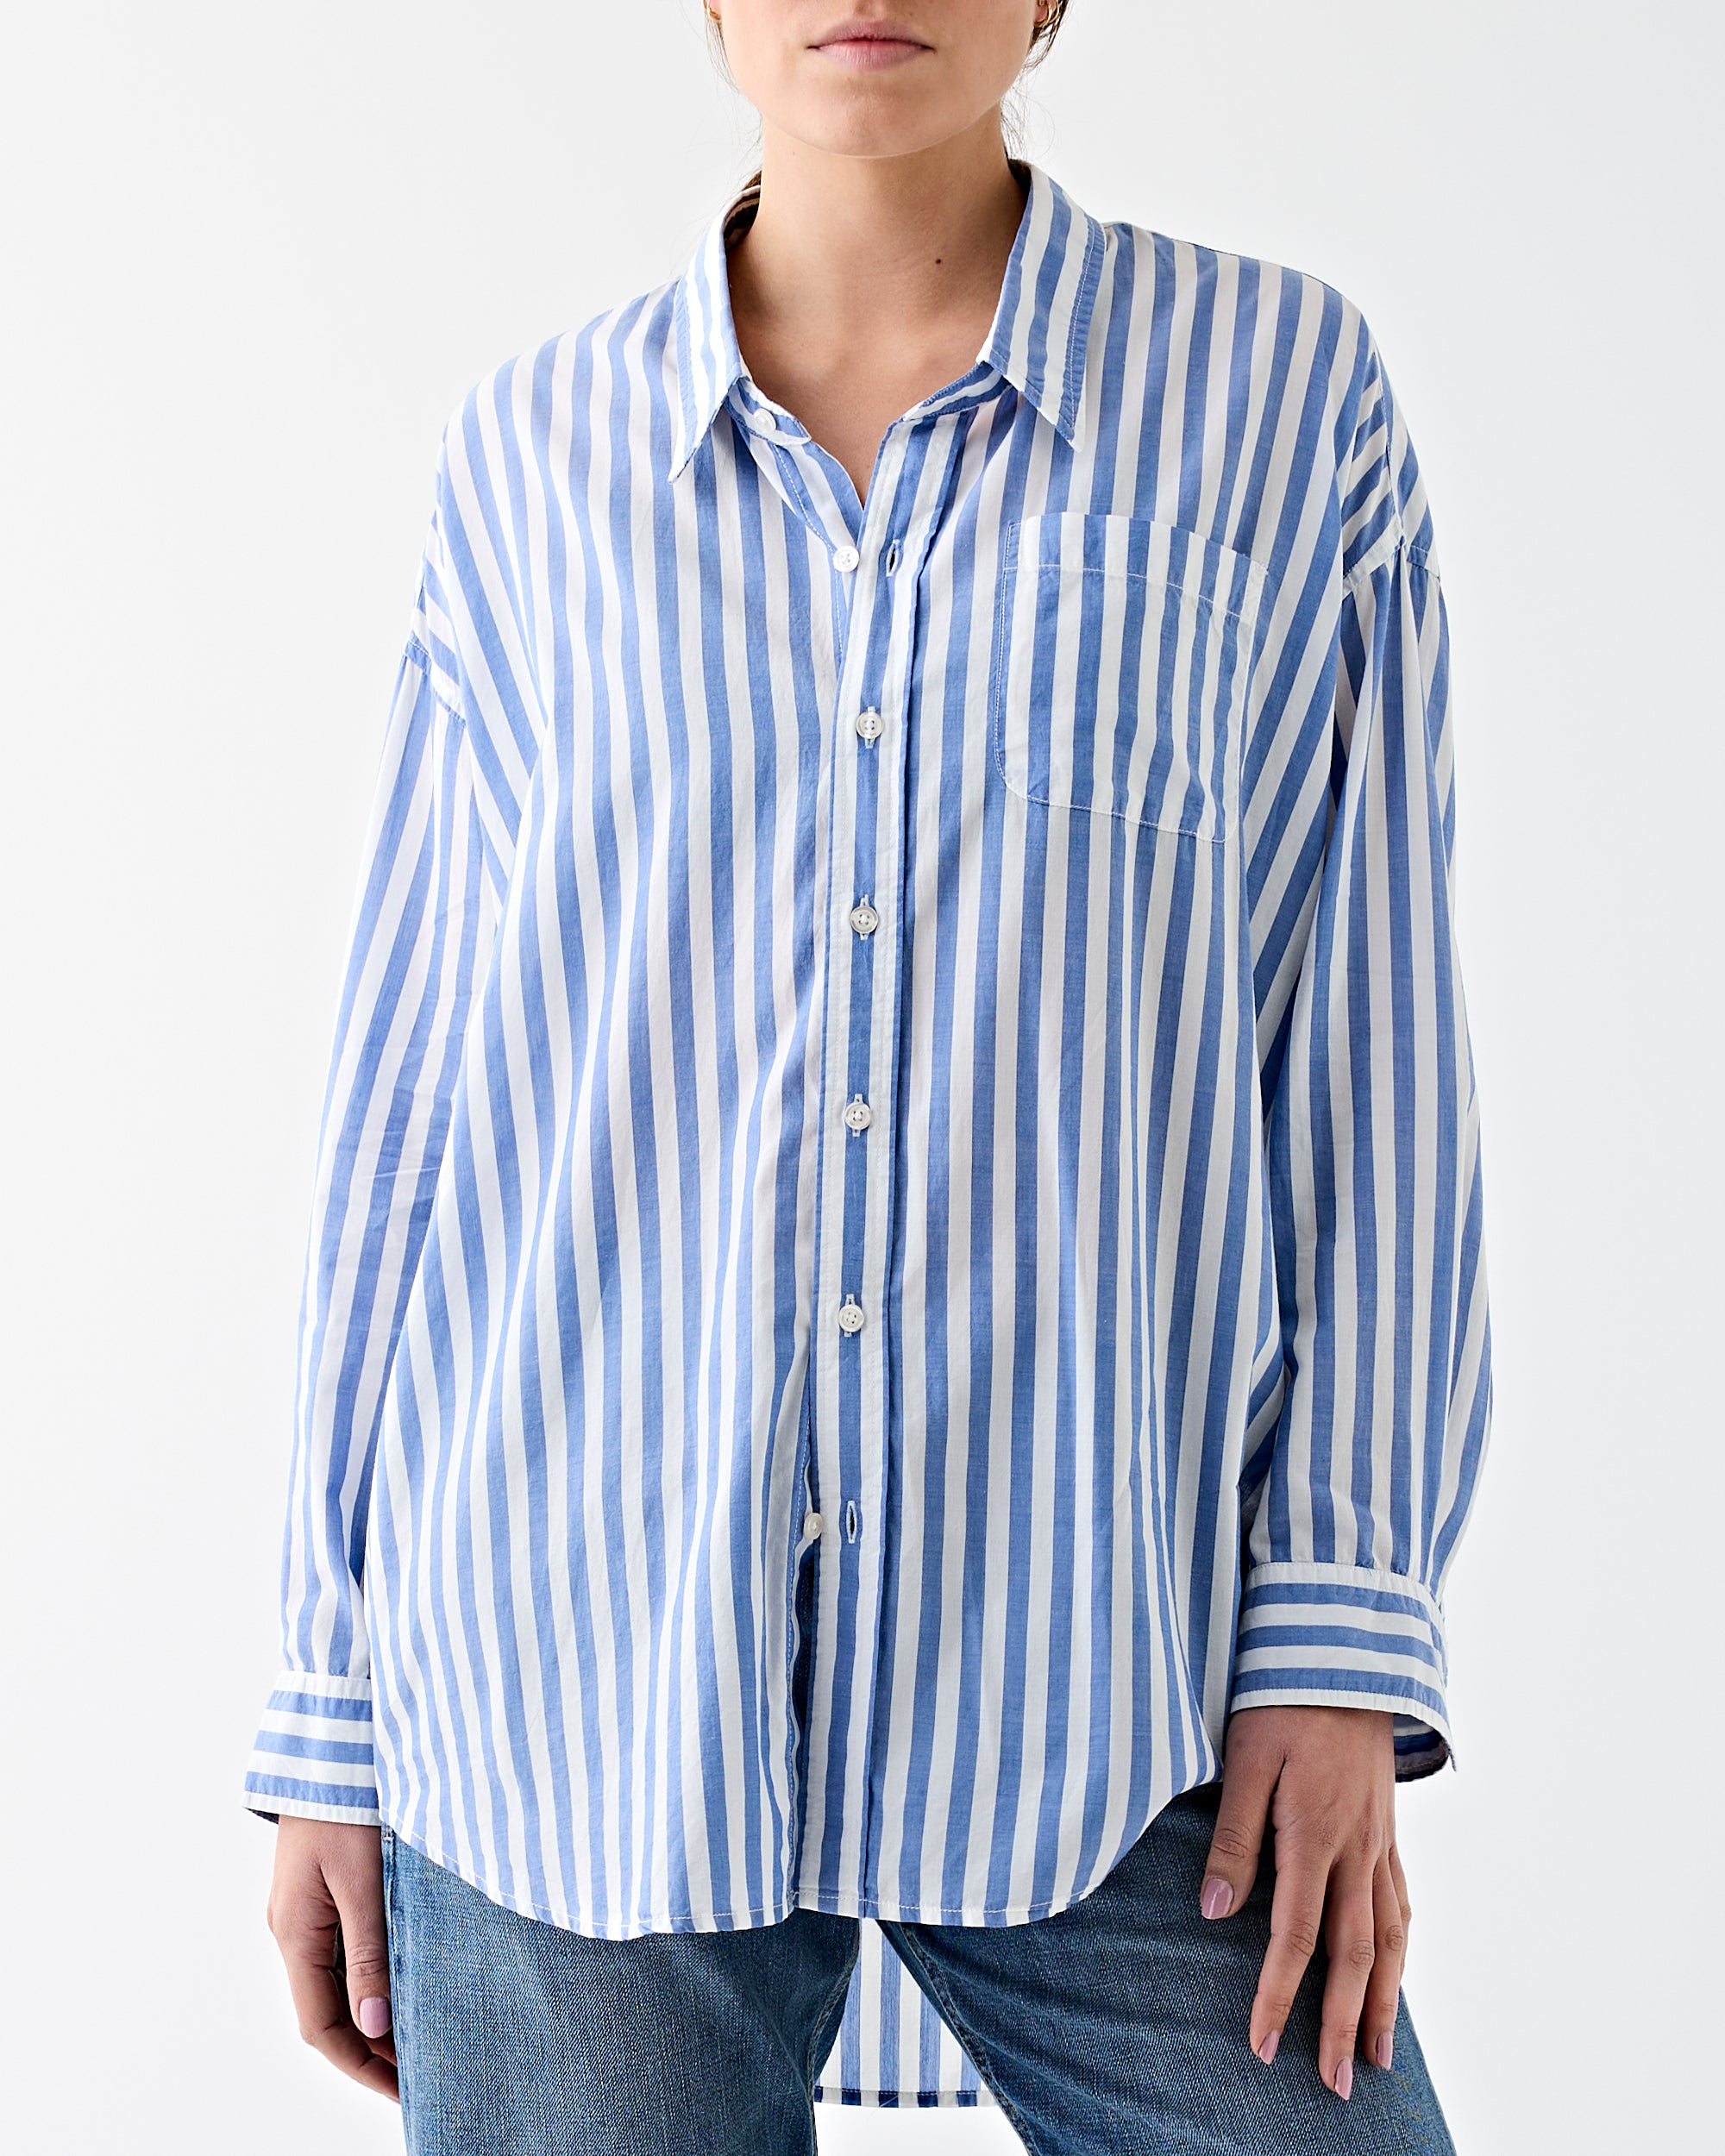 Denimist Button Front Shirt Wide Blue Stripe Shirt L/S Women